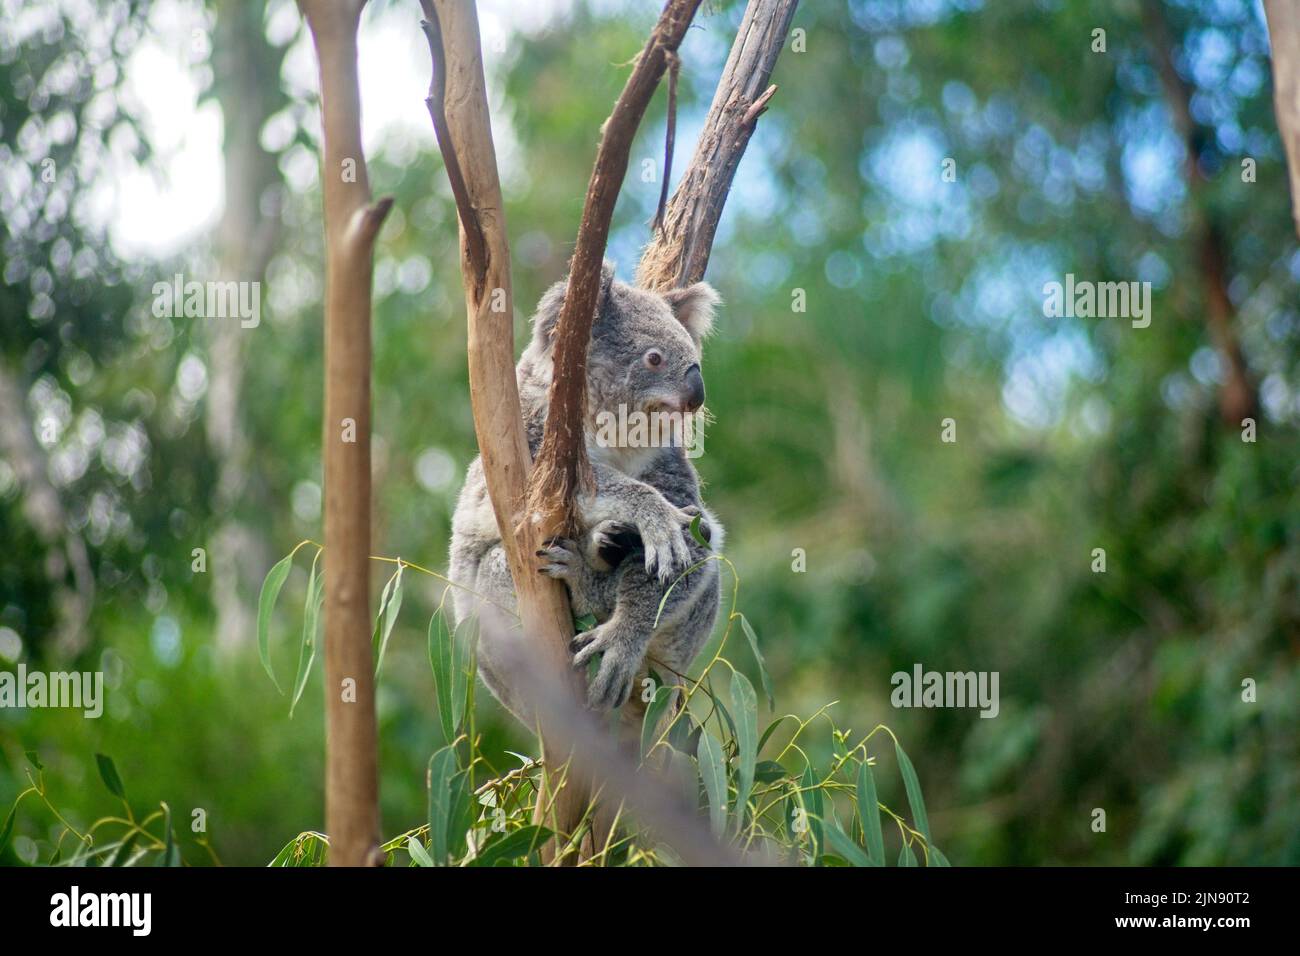 A closeup of a Koala perched on a tree branch Stock Photo